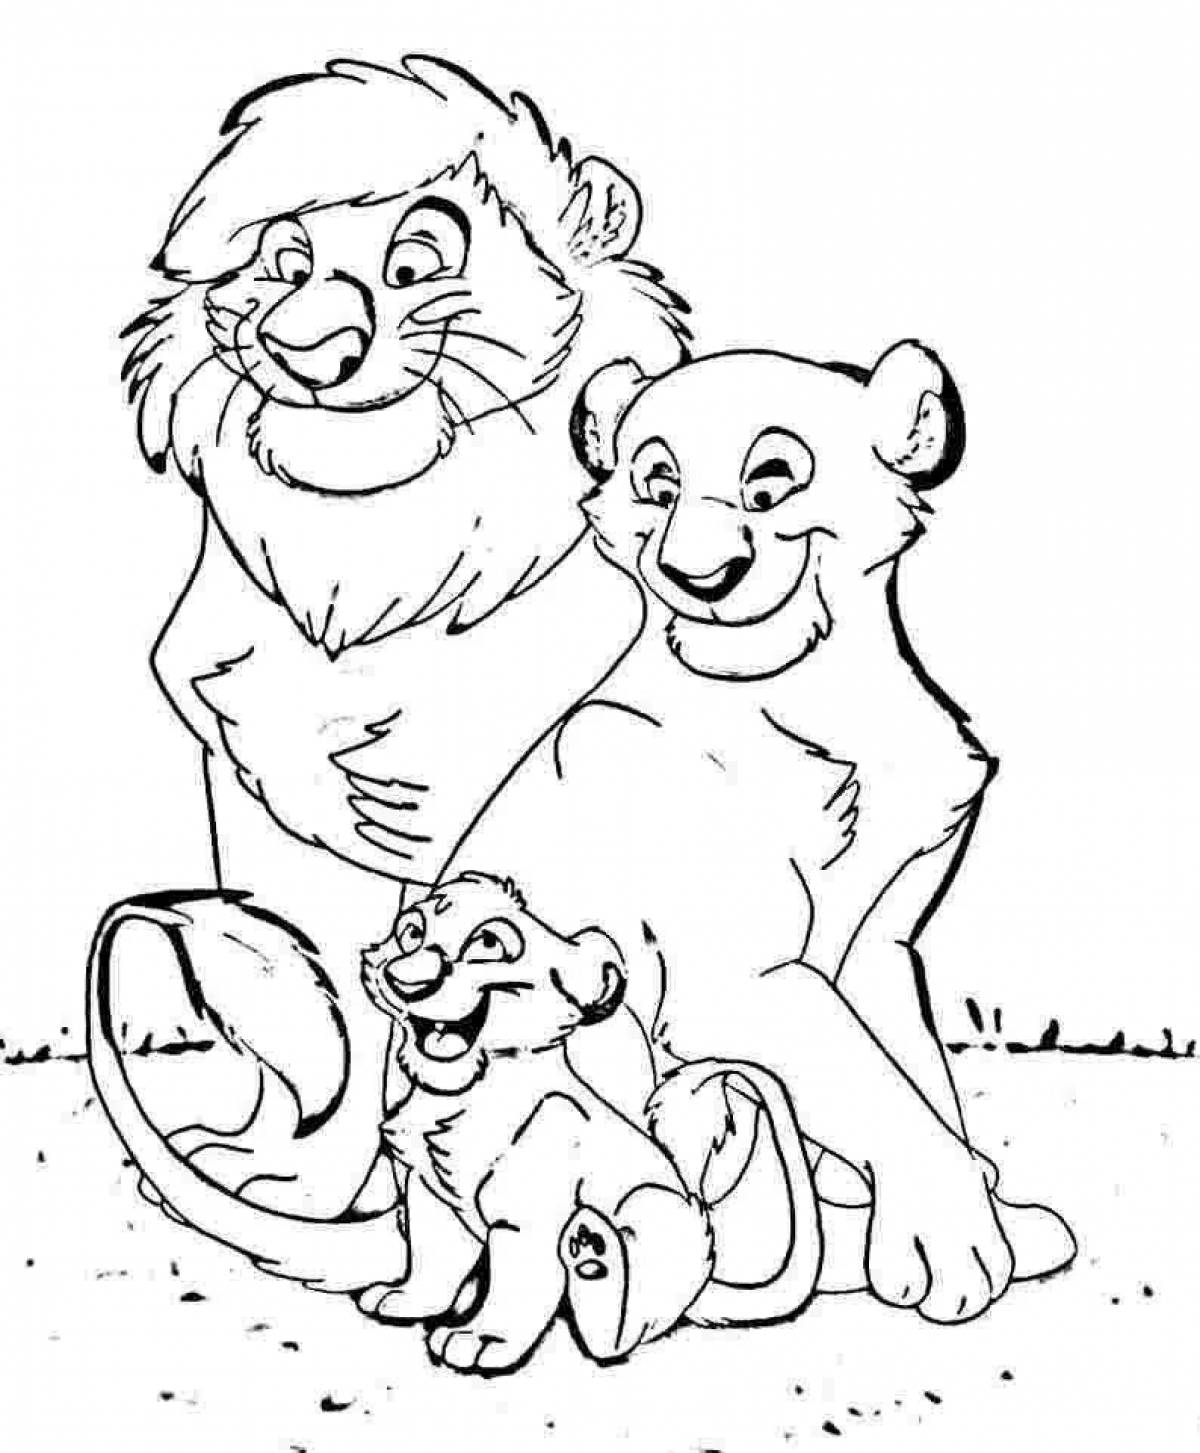 Лев и Львенок раскраска для детей